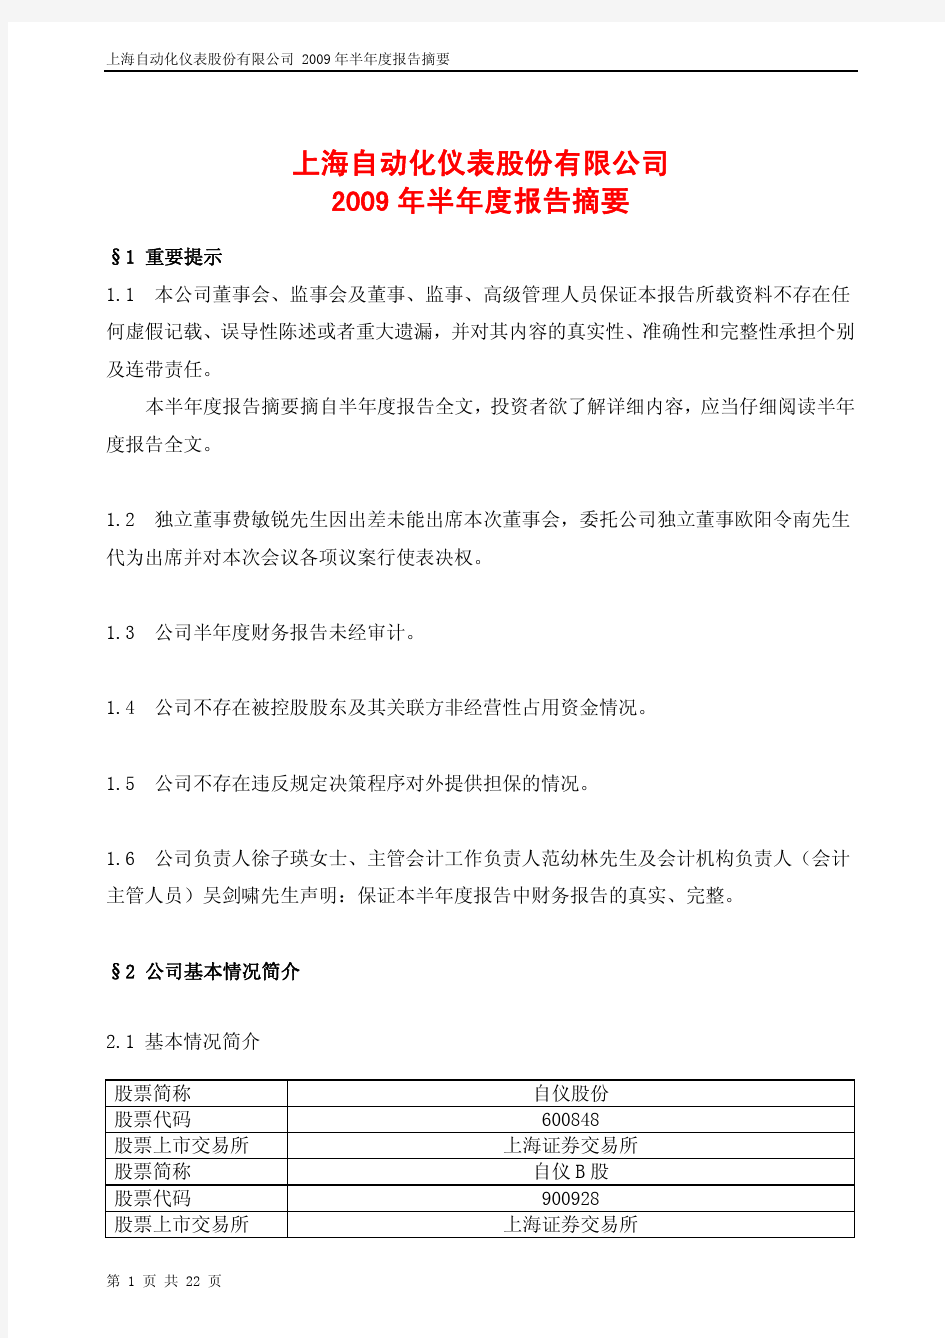 上海自动化仪表股份有限公司